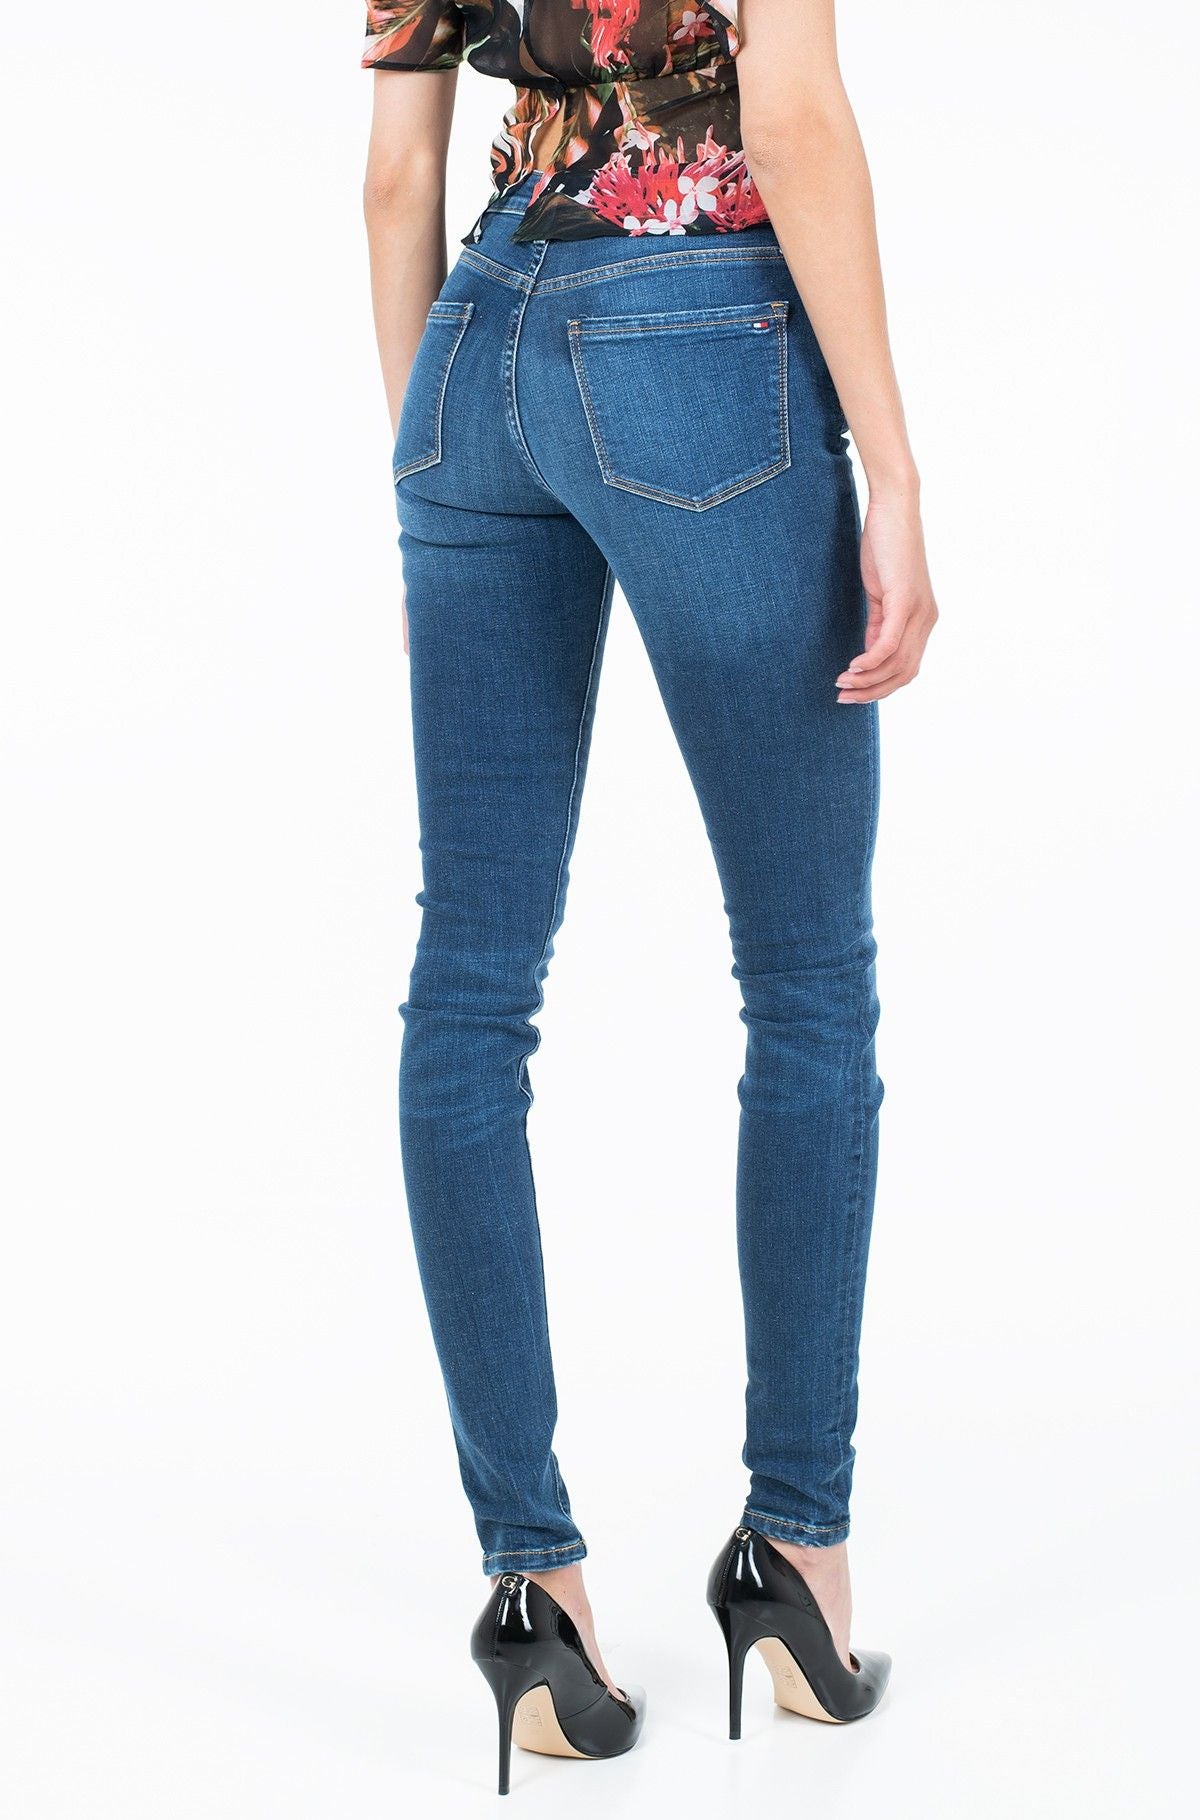 Tommy Hilfiger Elegante blaue Jeans im Jegging-Fit